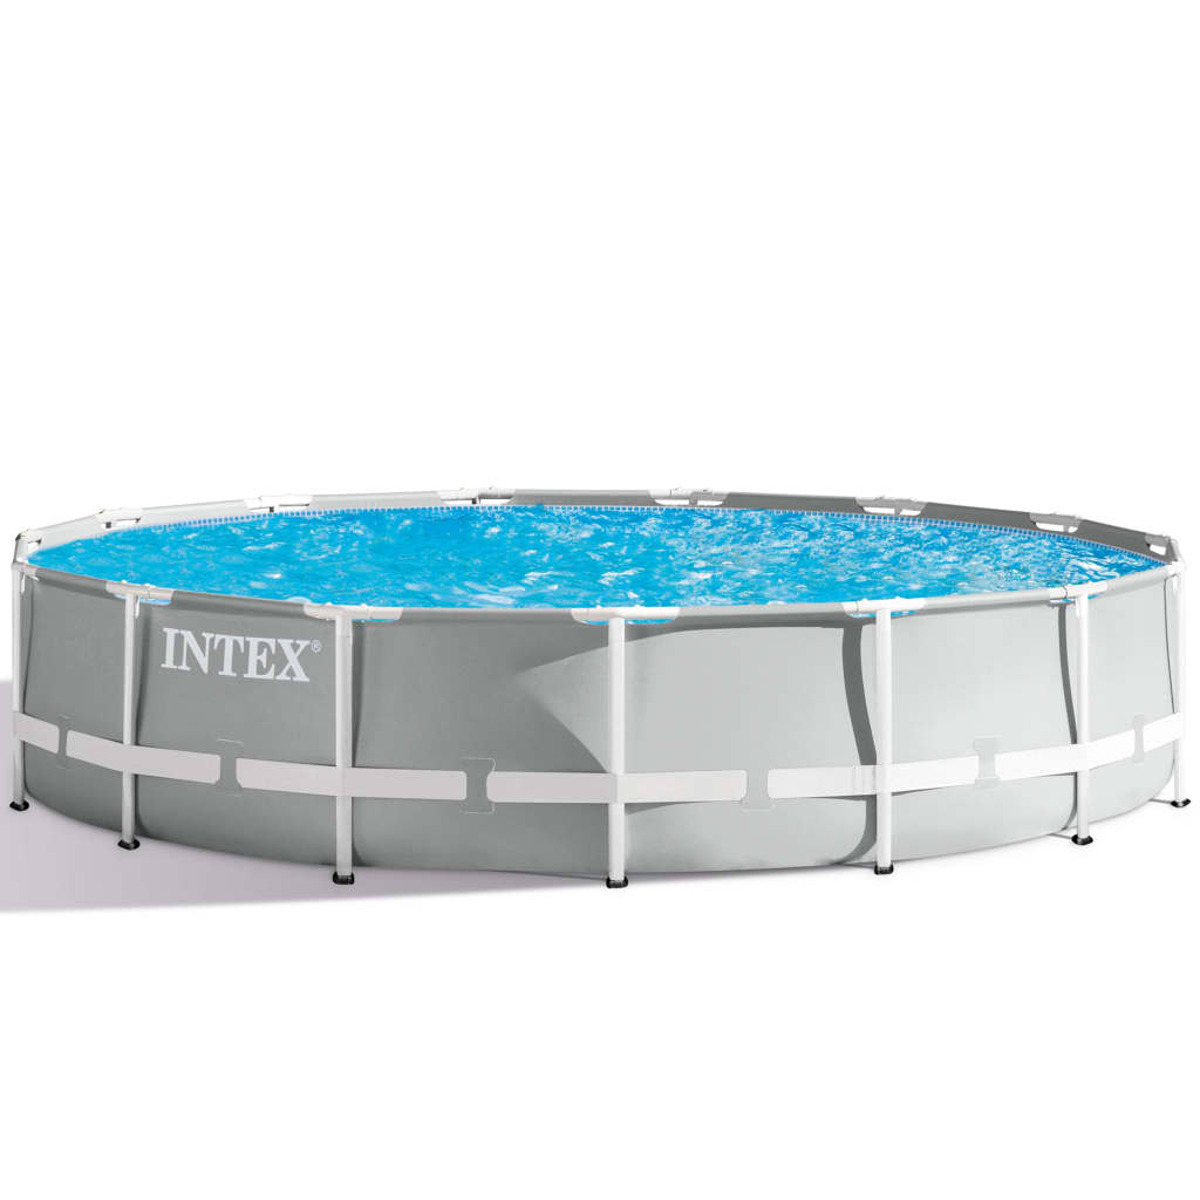 INTEX Pool, Blau 91487